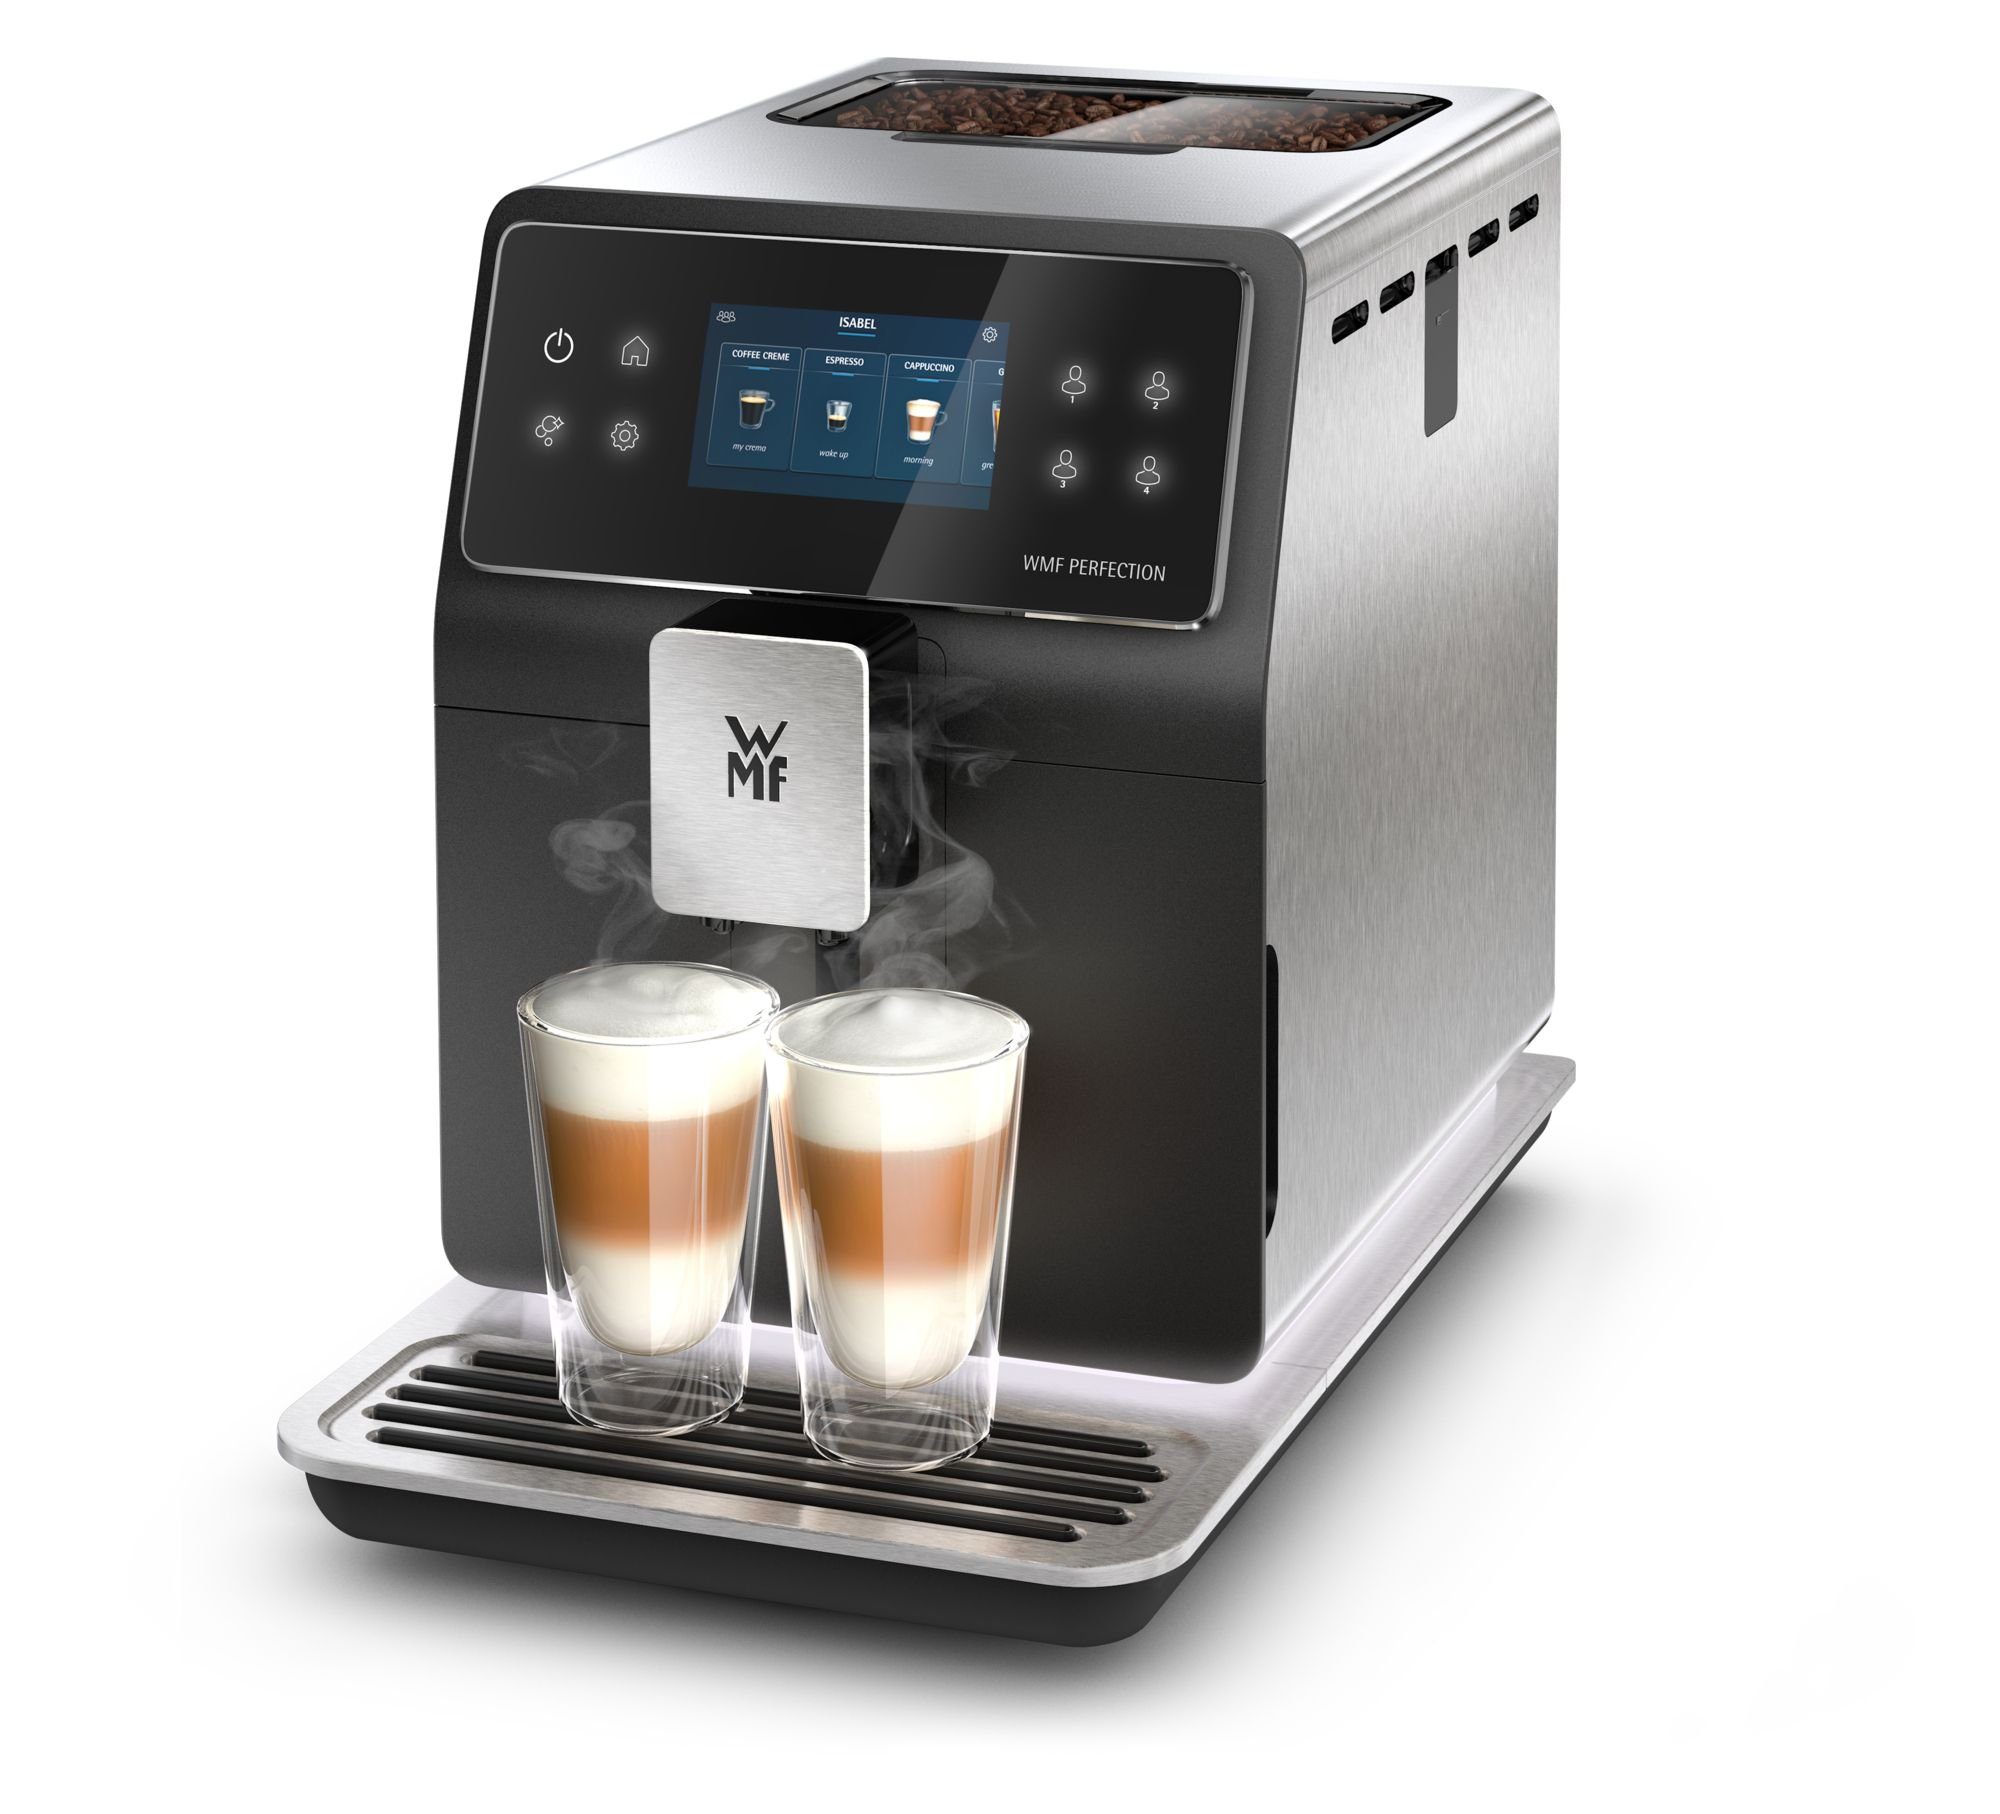 WMF Kaffeevollautomat Perfection 880L, 18 Getränkespezialitäten, Double Thermoblock, Edelstahl-Mahlwerk